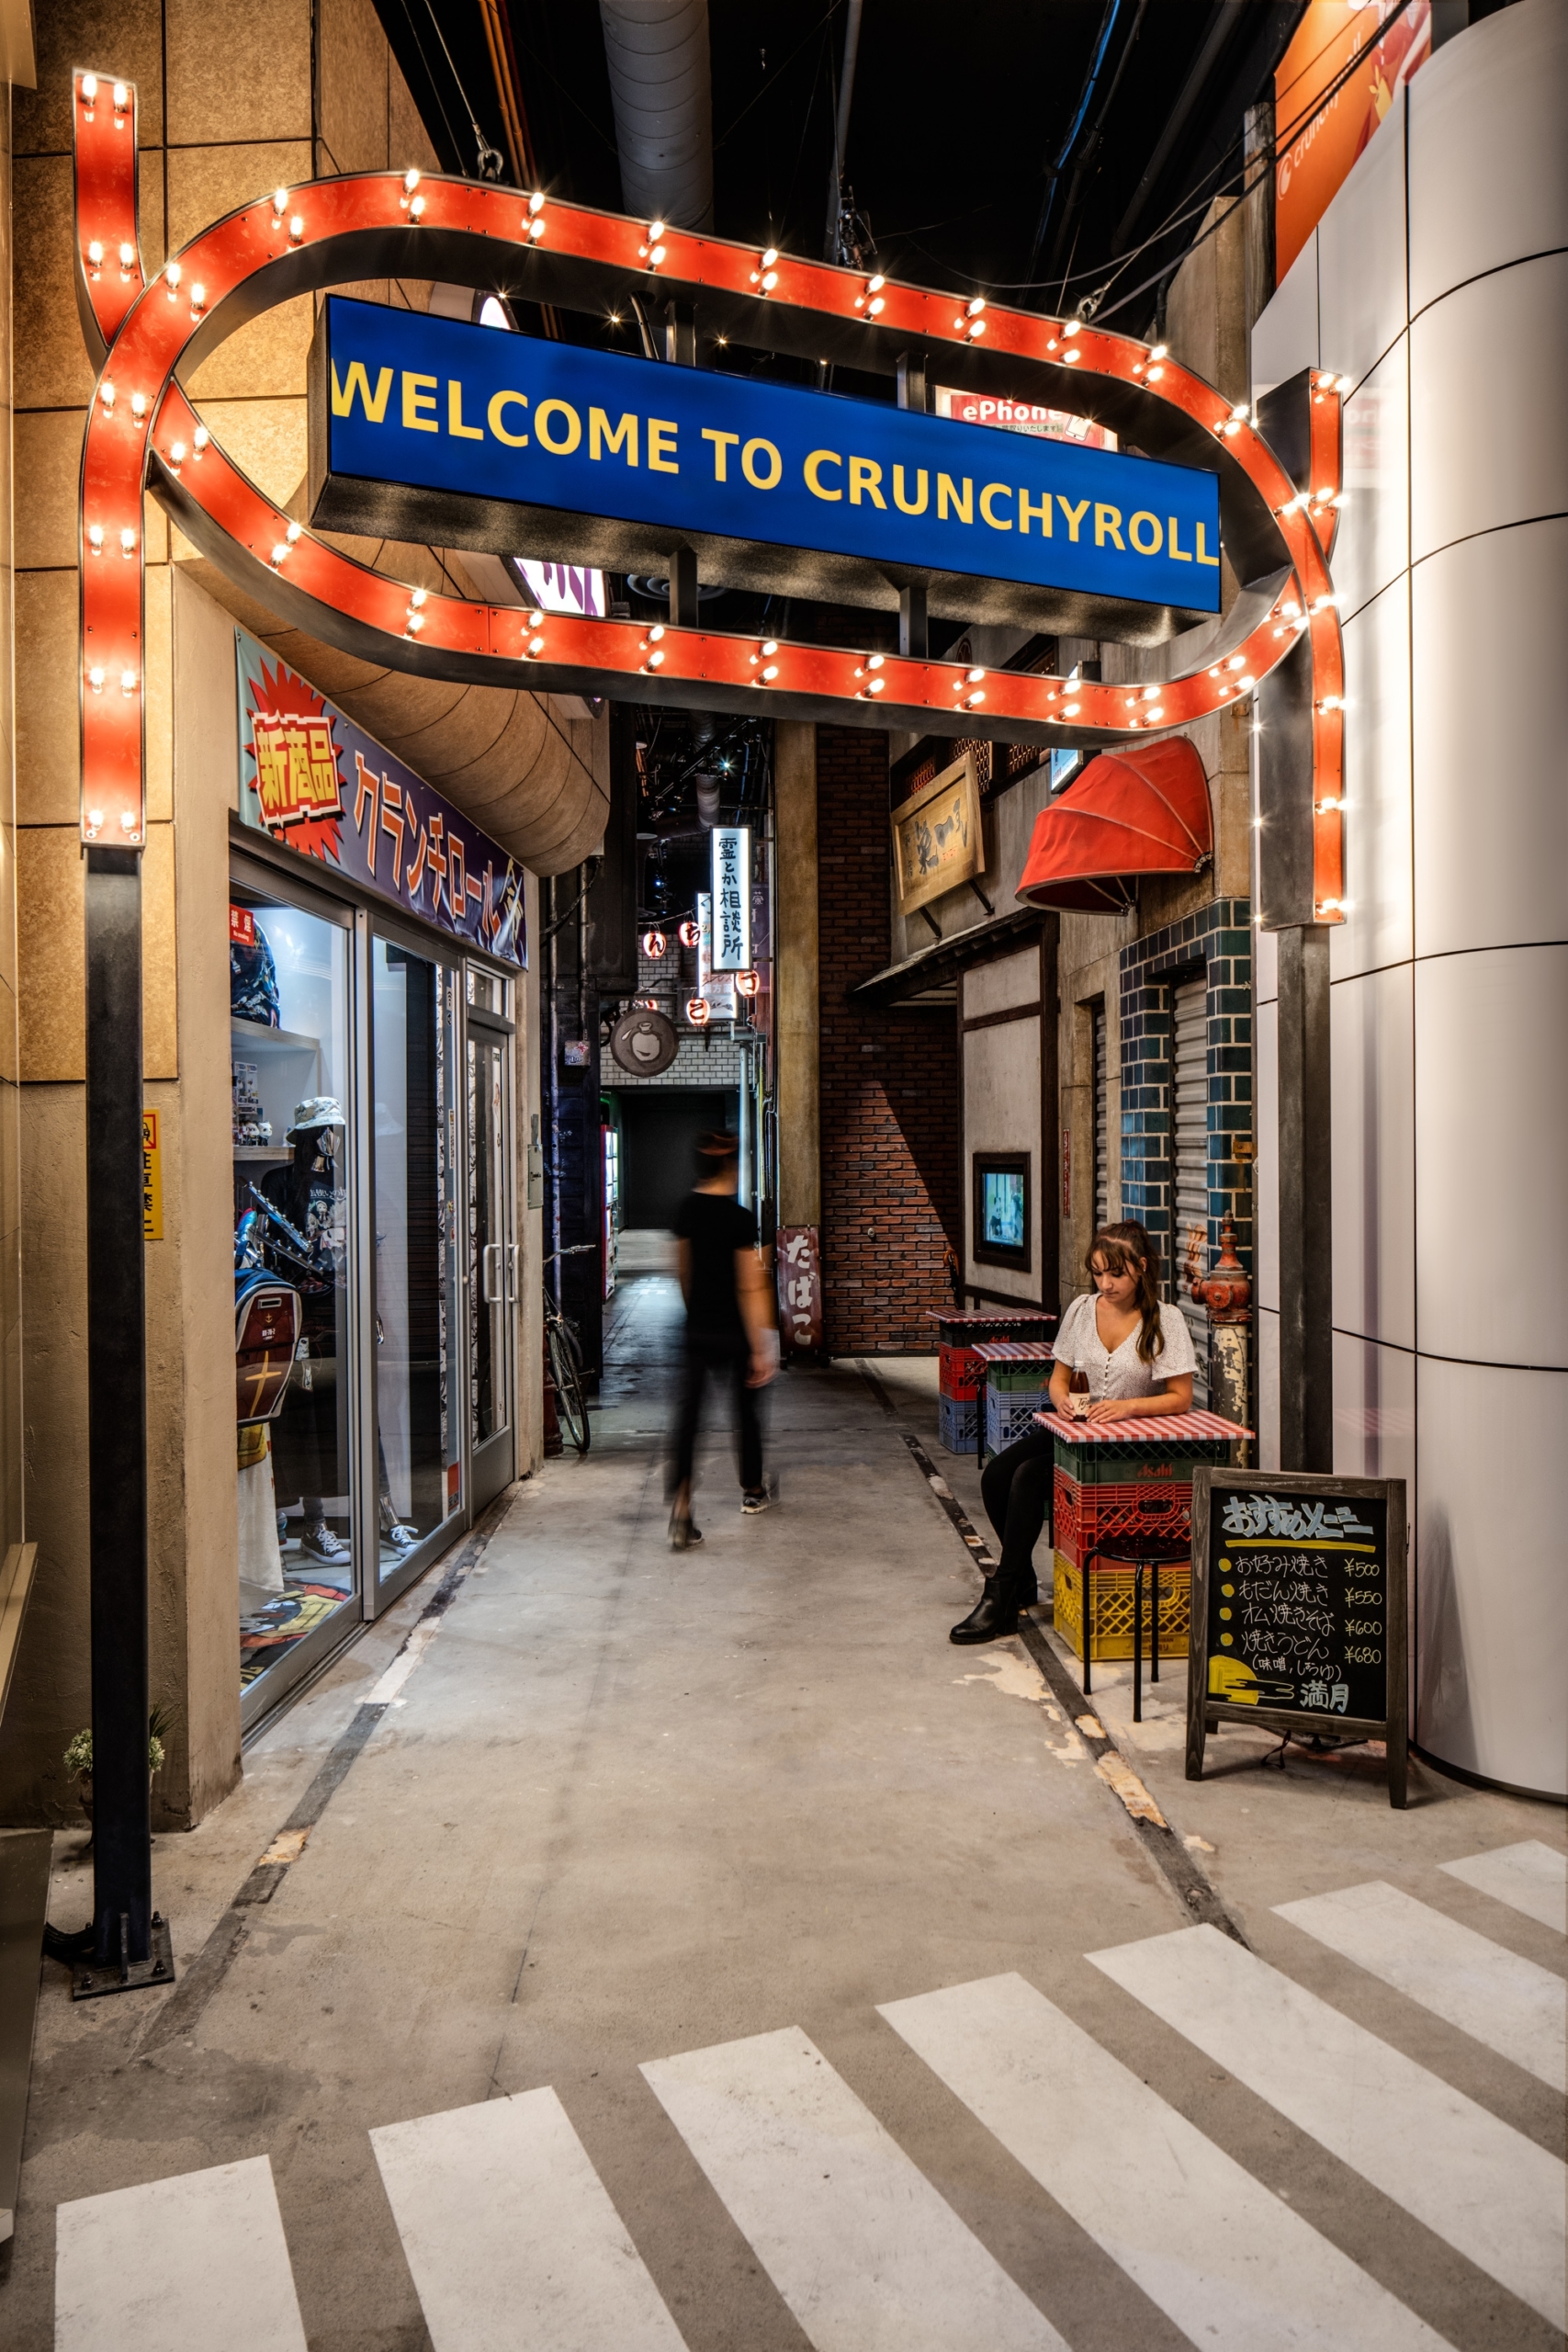 Crunchyroll(クランチロール) のオフィス - カリフォルニア州 サンフランシスコの廊下